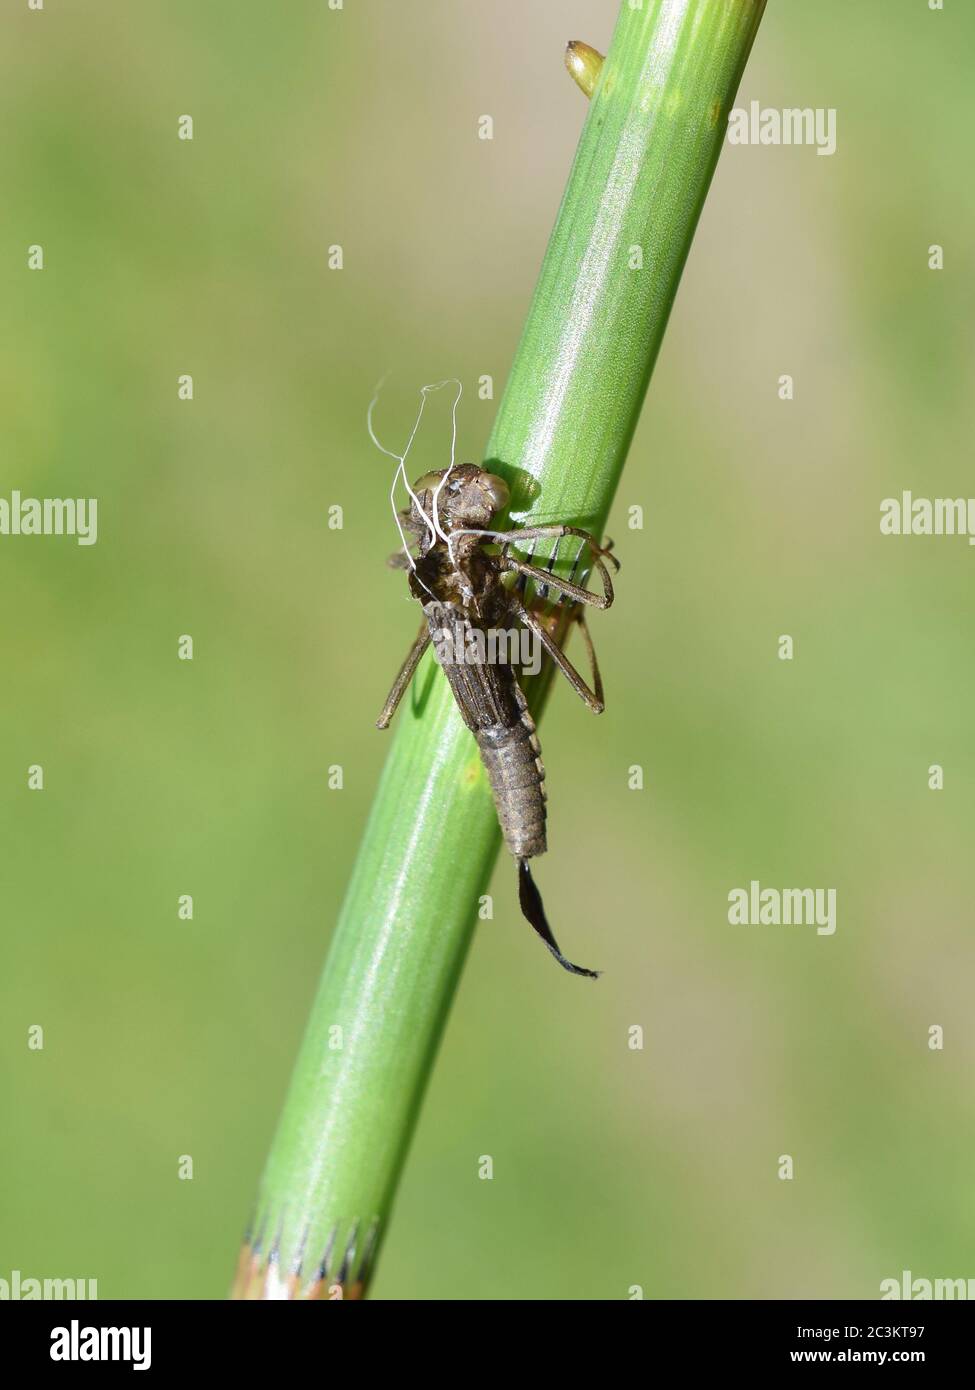 La pelle secca vuota della ninfa da Damselfly attaccata ad uno stelo della pianta del horsetail Foto Stock